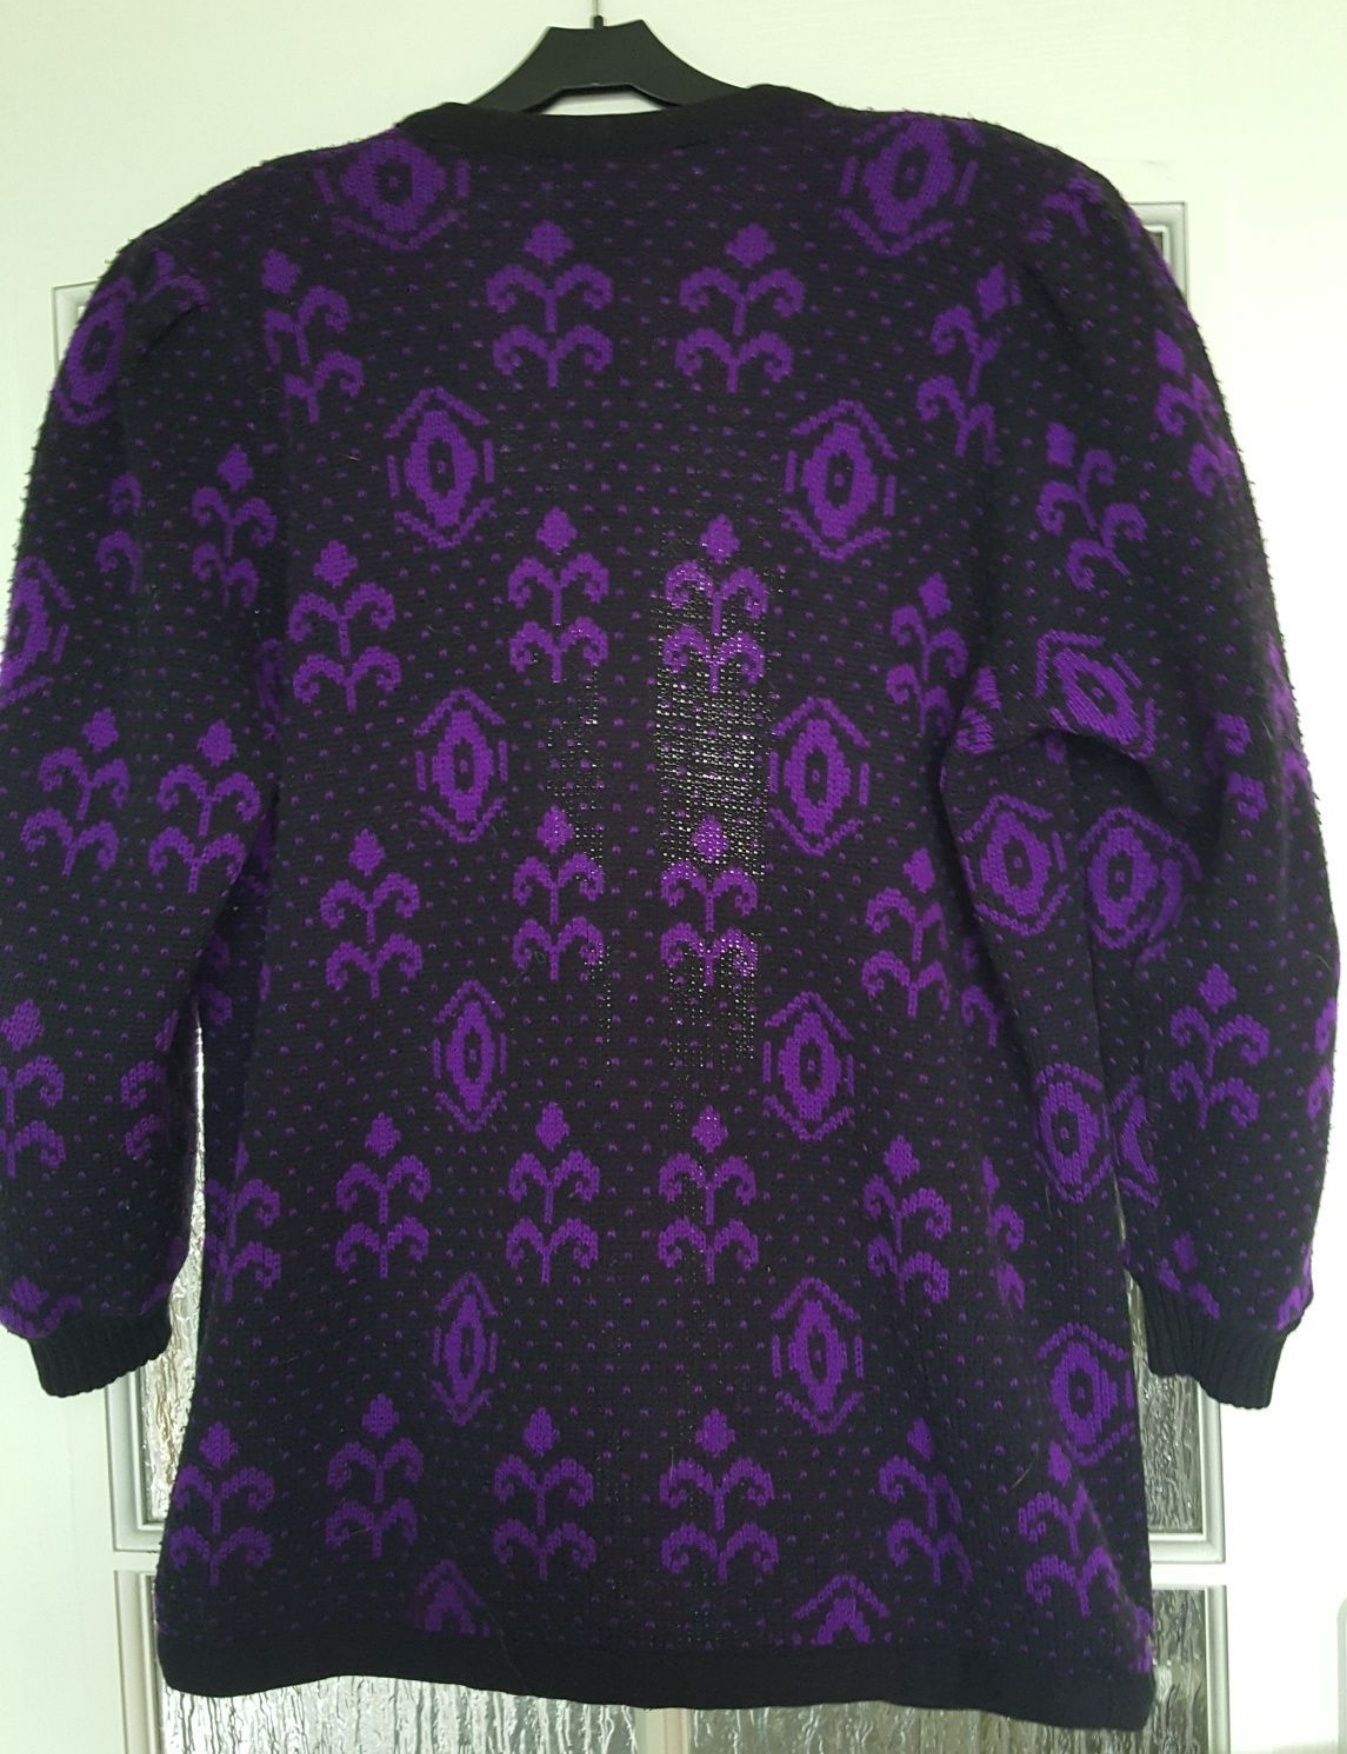 KARDIGAN, sweter czarno - fioletowy,  DUŻY rozmiar, vintage